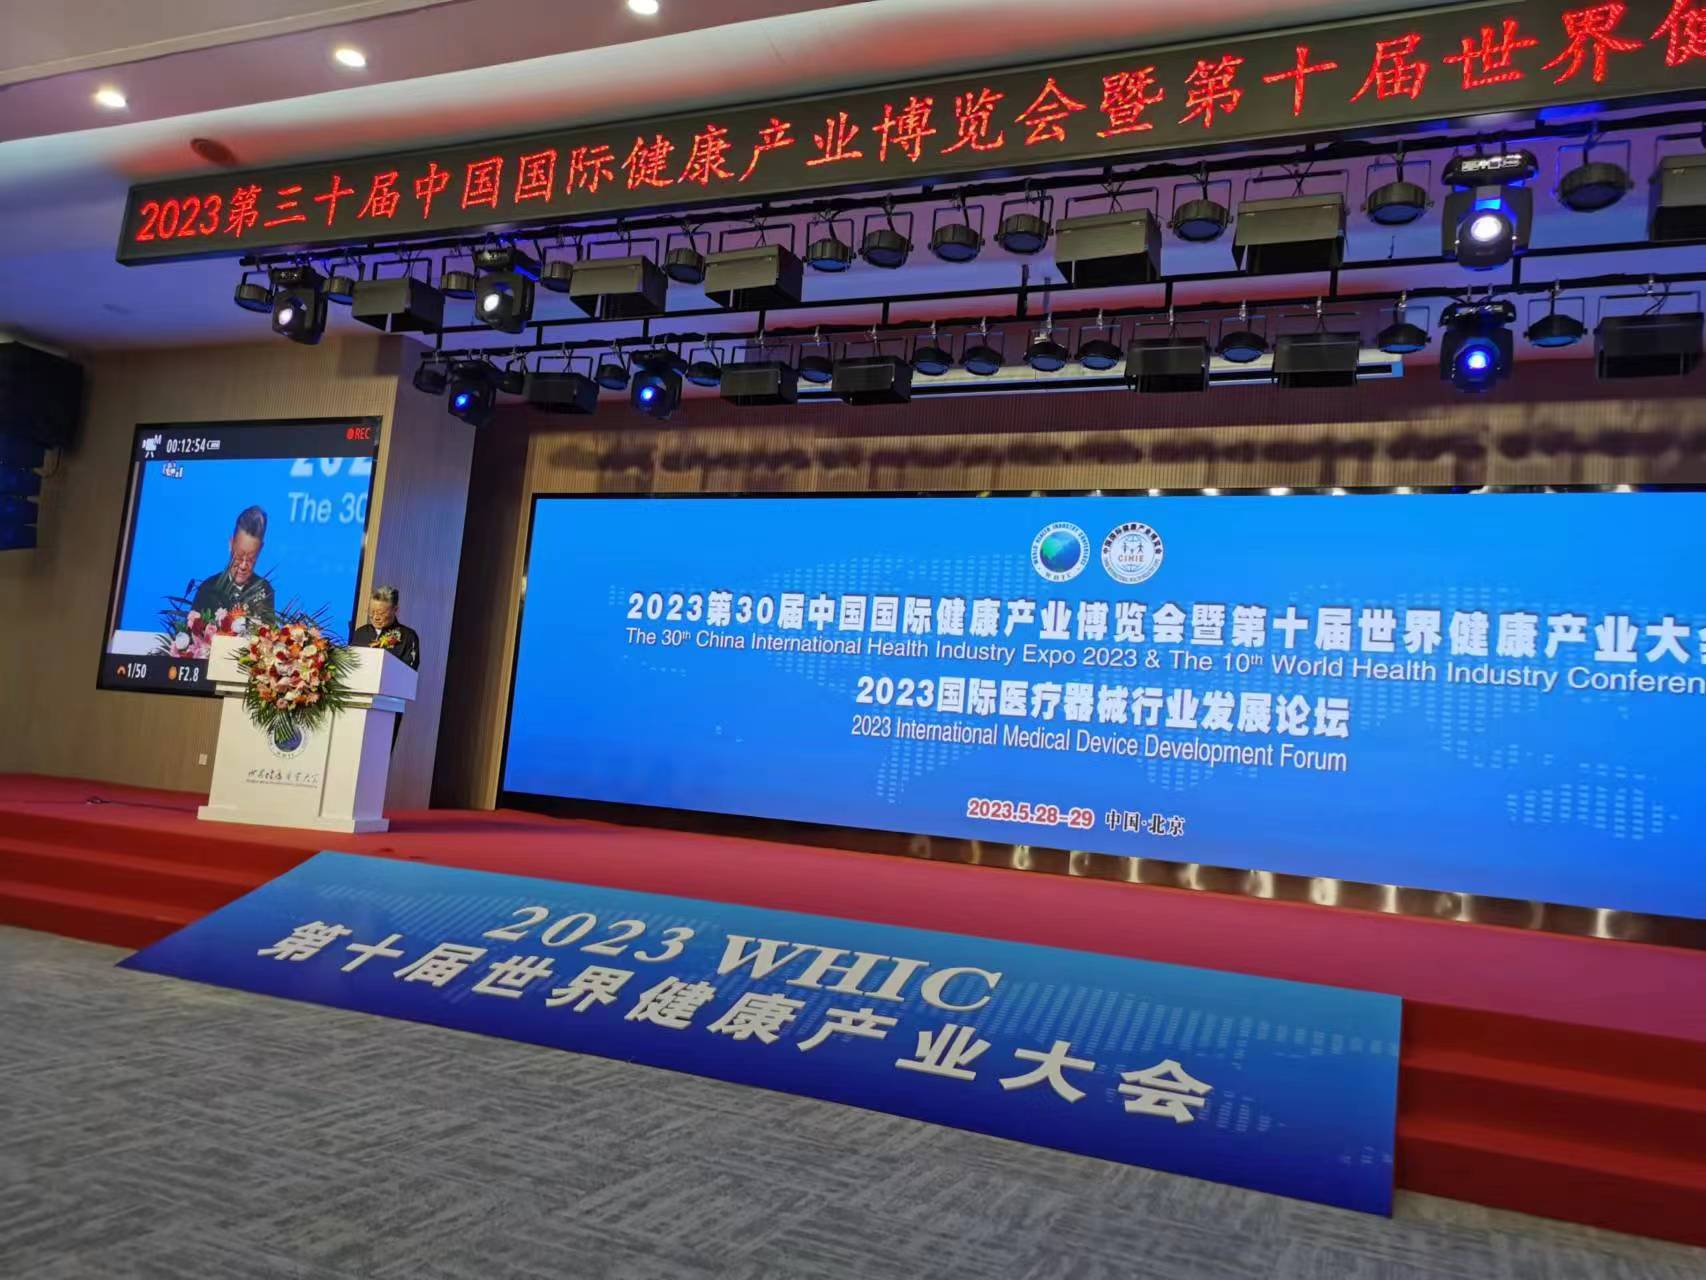 沙祖康出席第十三届中国国际健康产业博览会暨第十届世界健康产业大会开幕式上的讲话